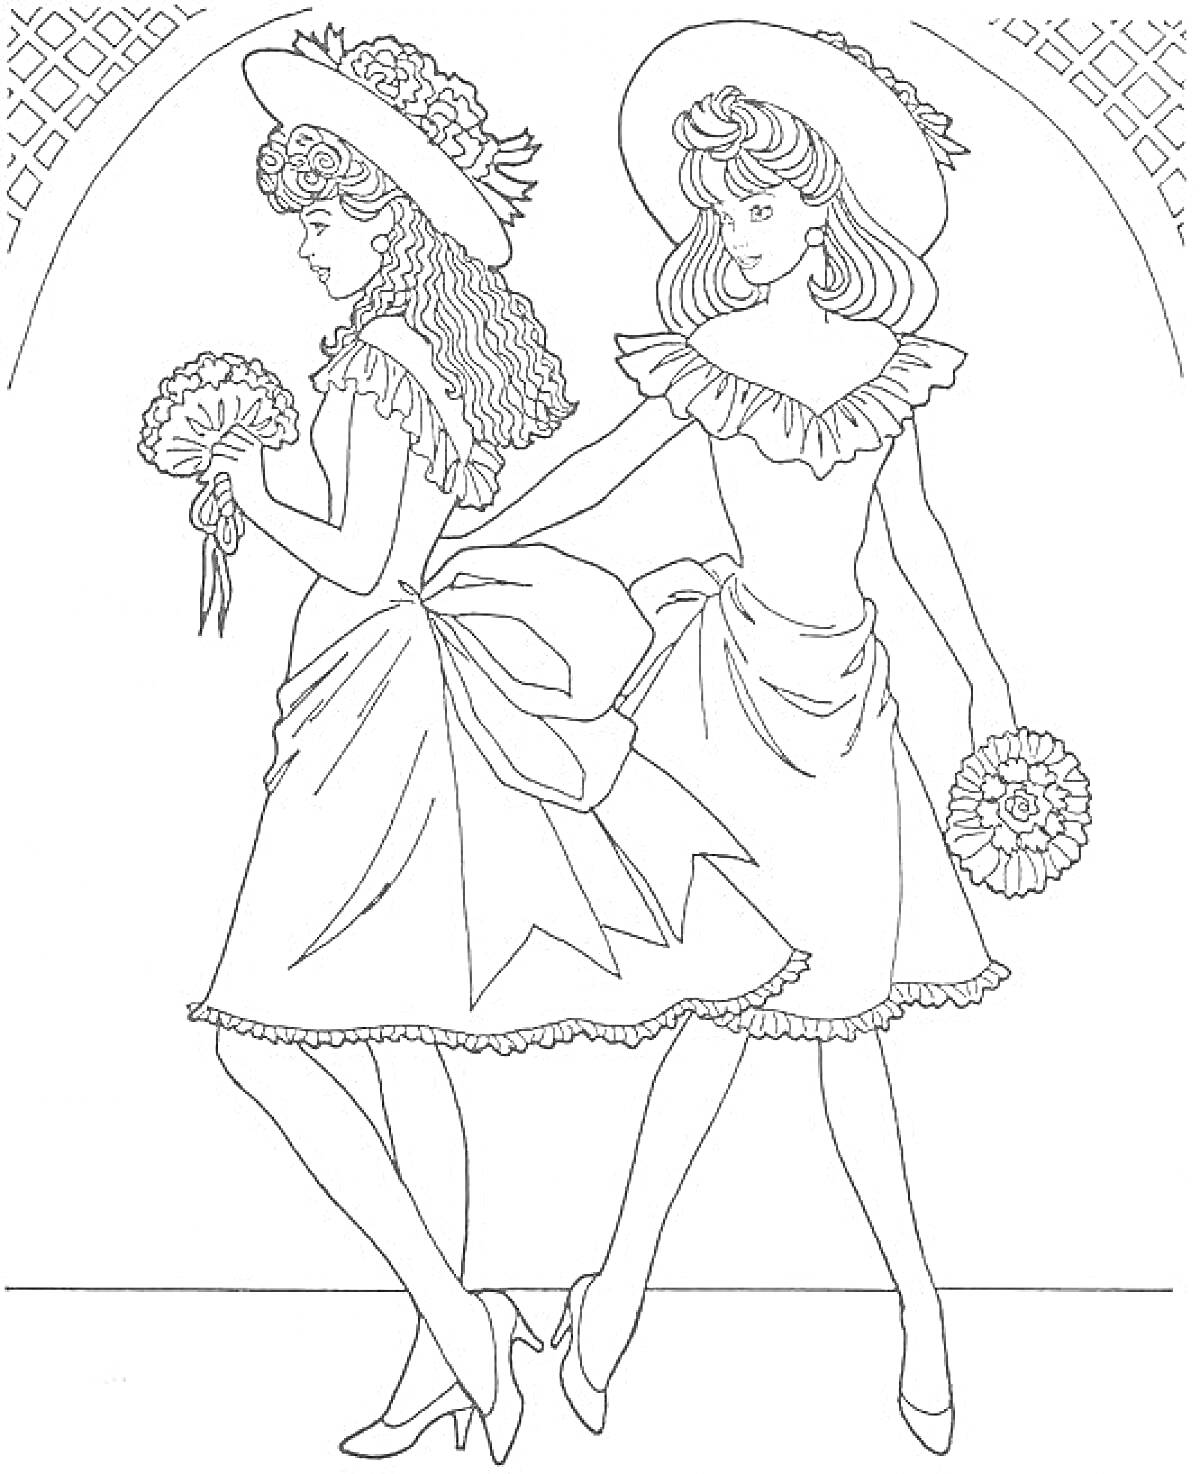 Две девушки-модели в шляпах и платьях с букетами на фоне арки